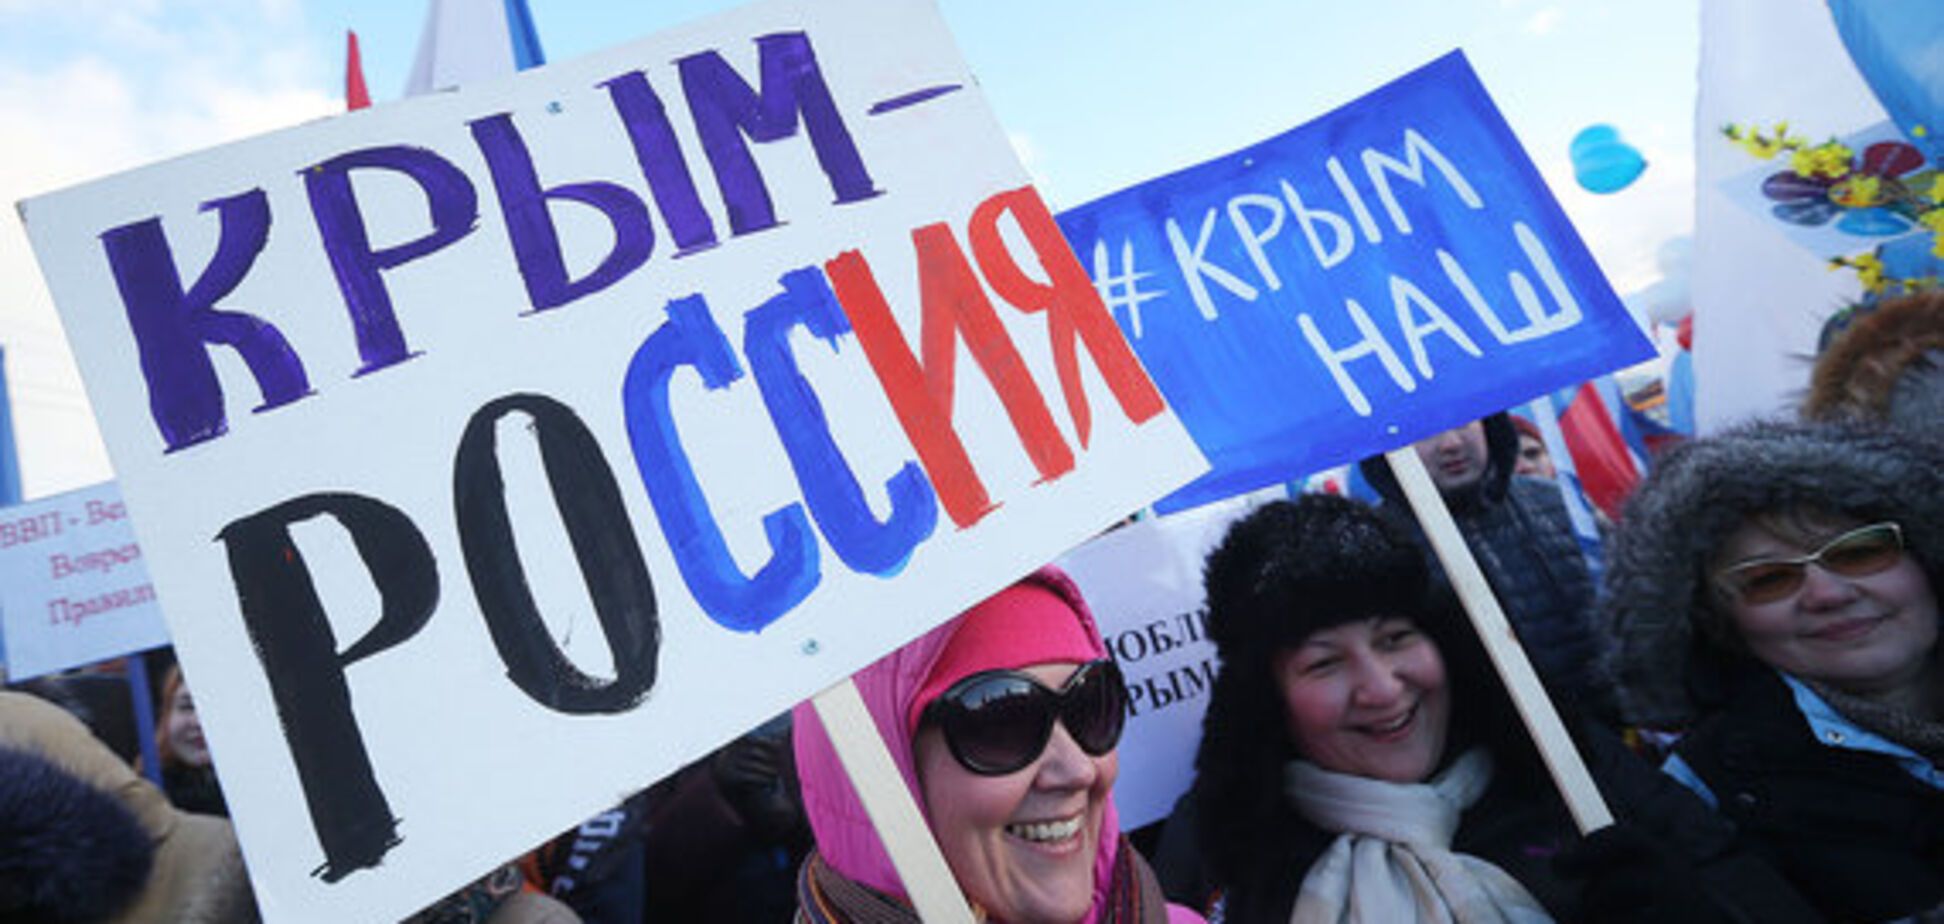 Ще за Януковича: у Росії 'спалили' справжню дату вторгнення в Україну